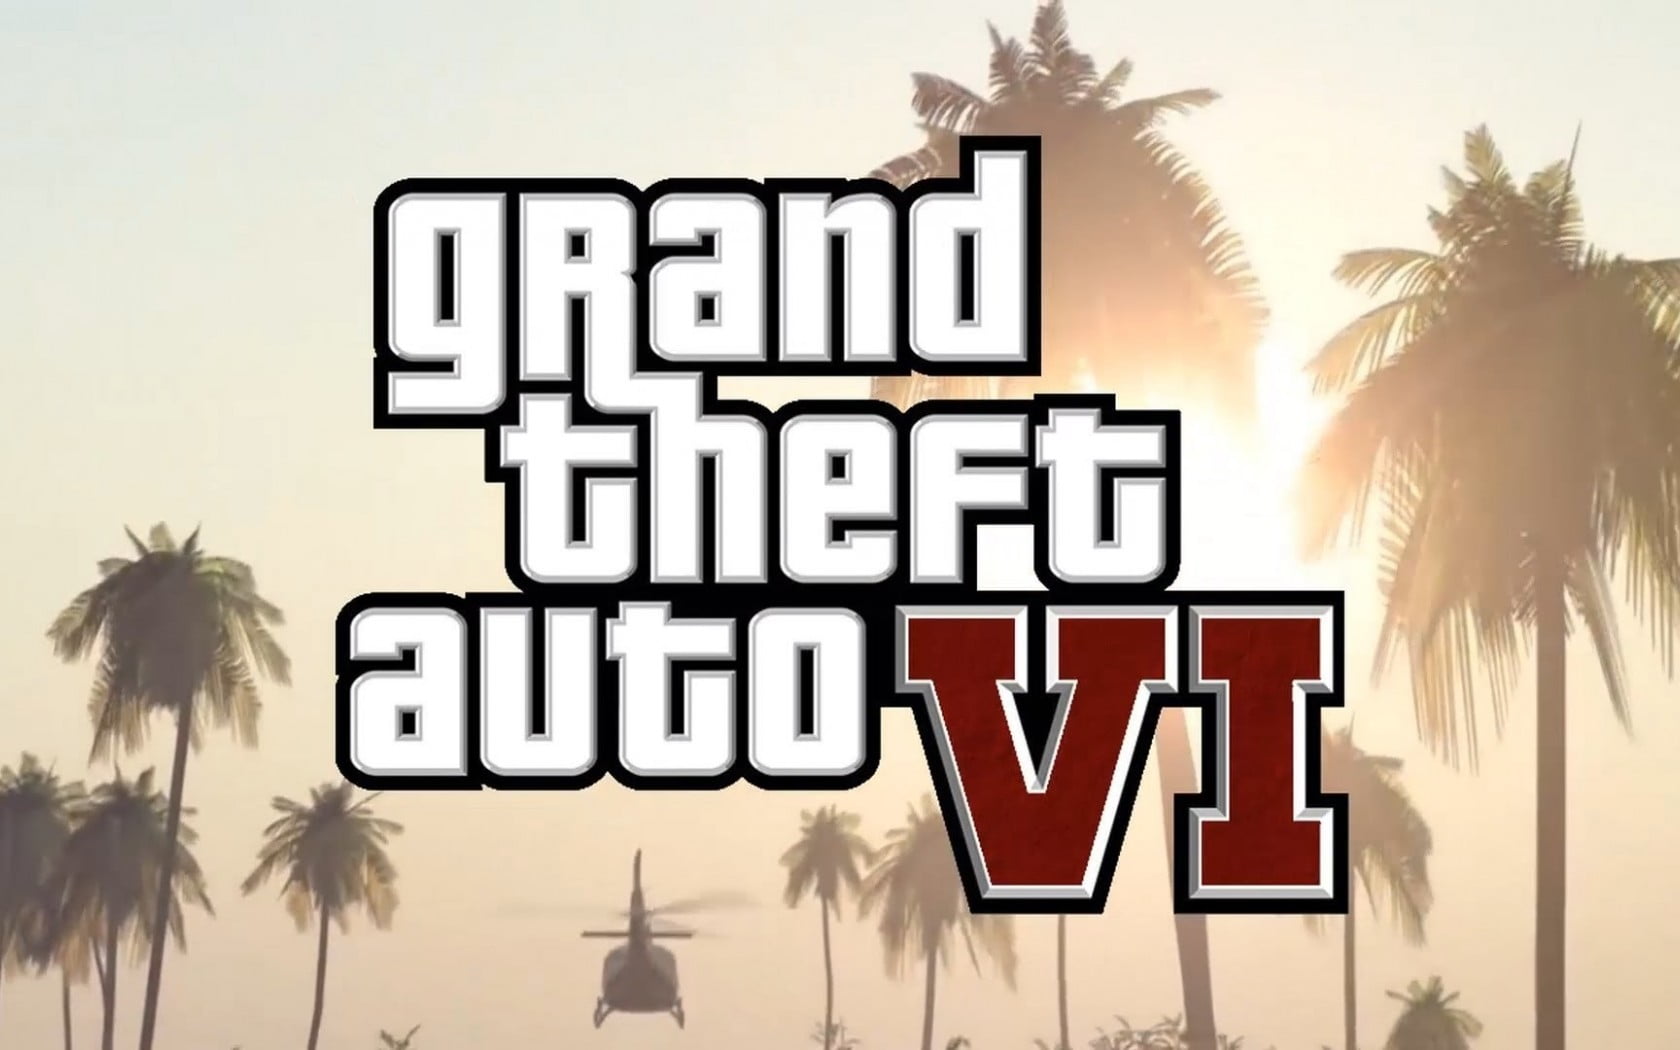 Grand Theft Auto VI wallpaper